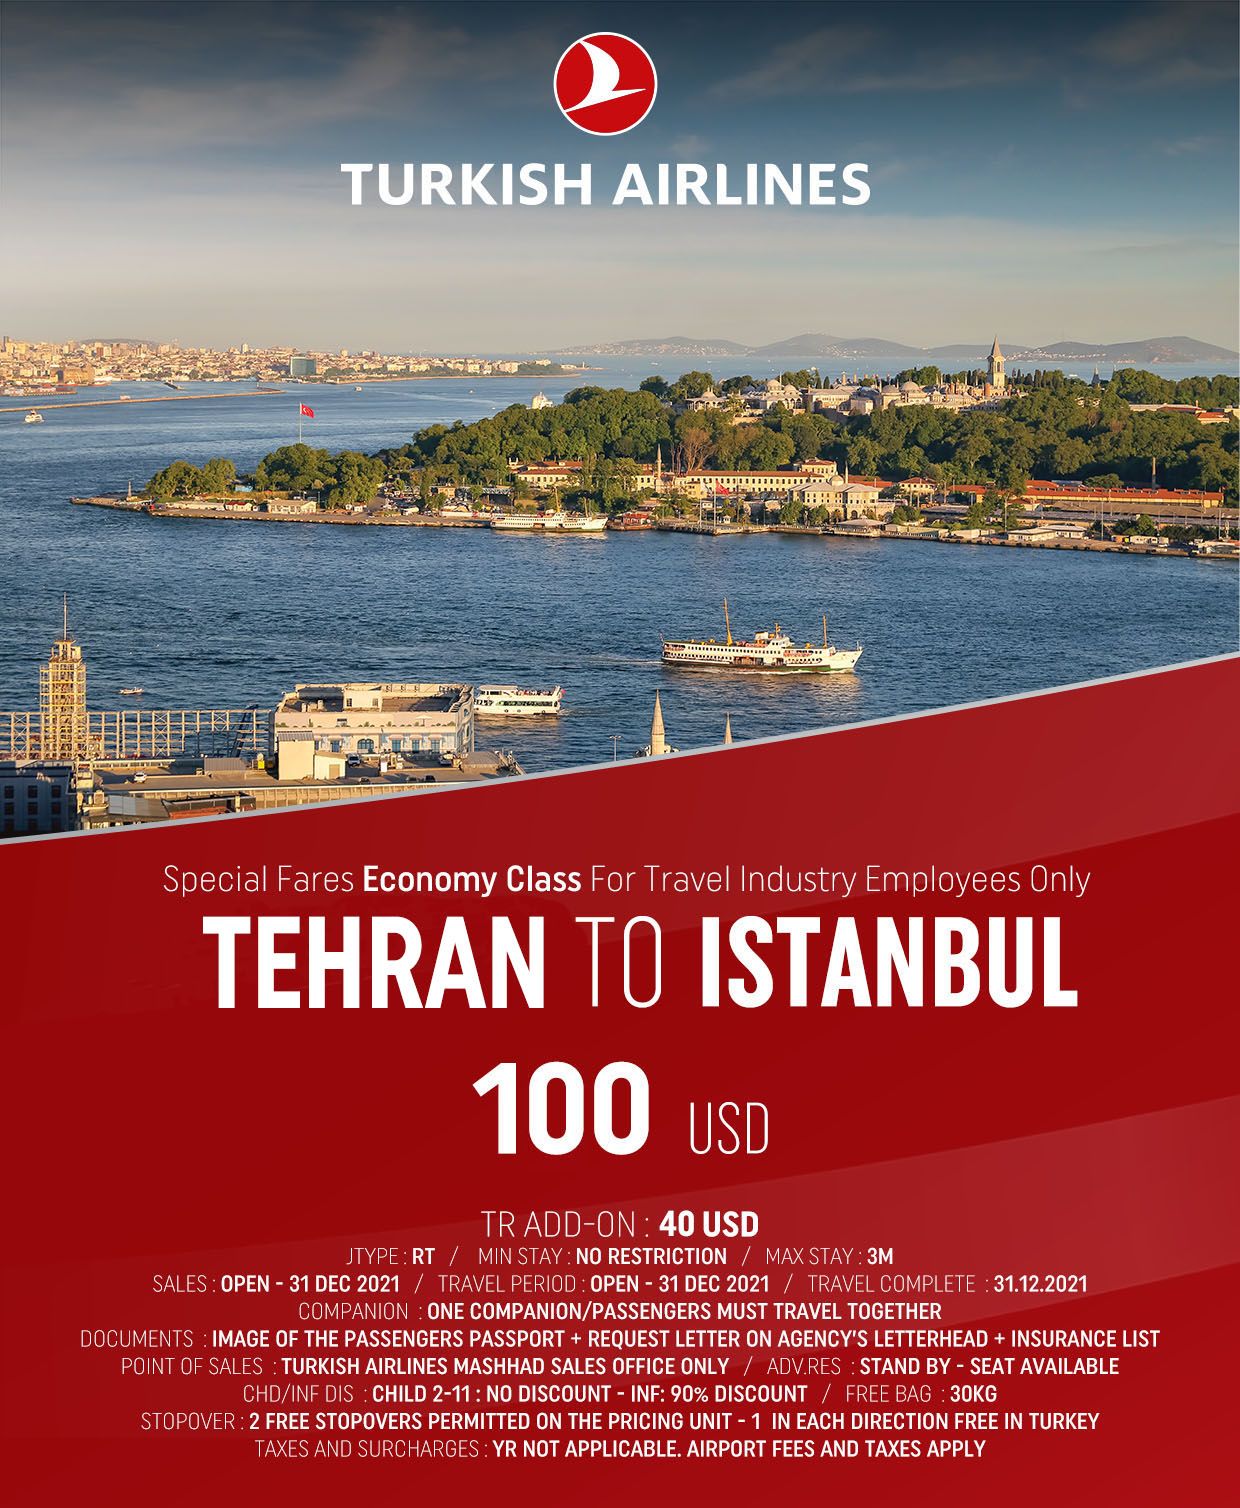 بخشنامه و اطلاعیه   هواپیمایی ترکیش درباره نرخ ویژه تهران استانبول در کابین اکونومی